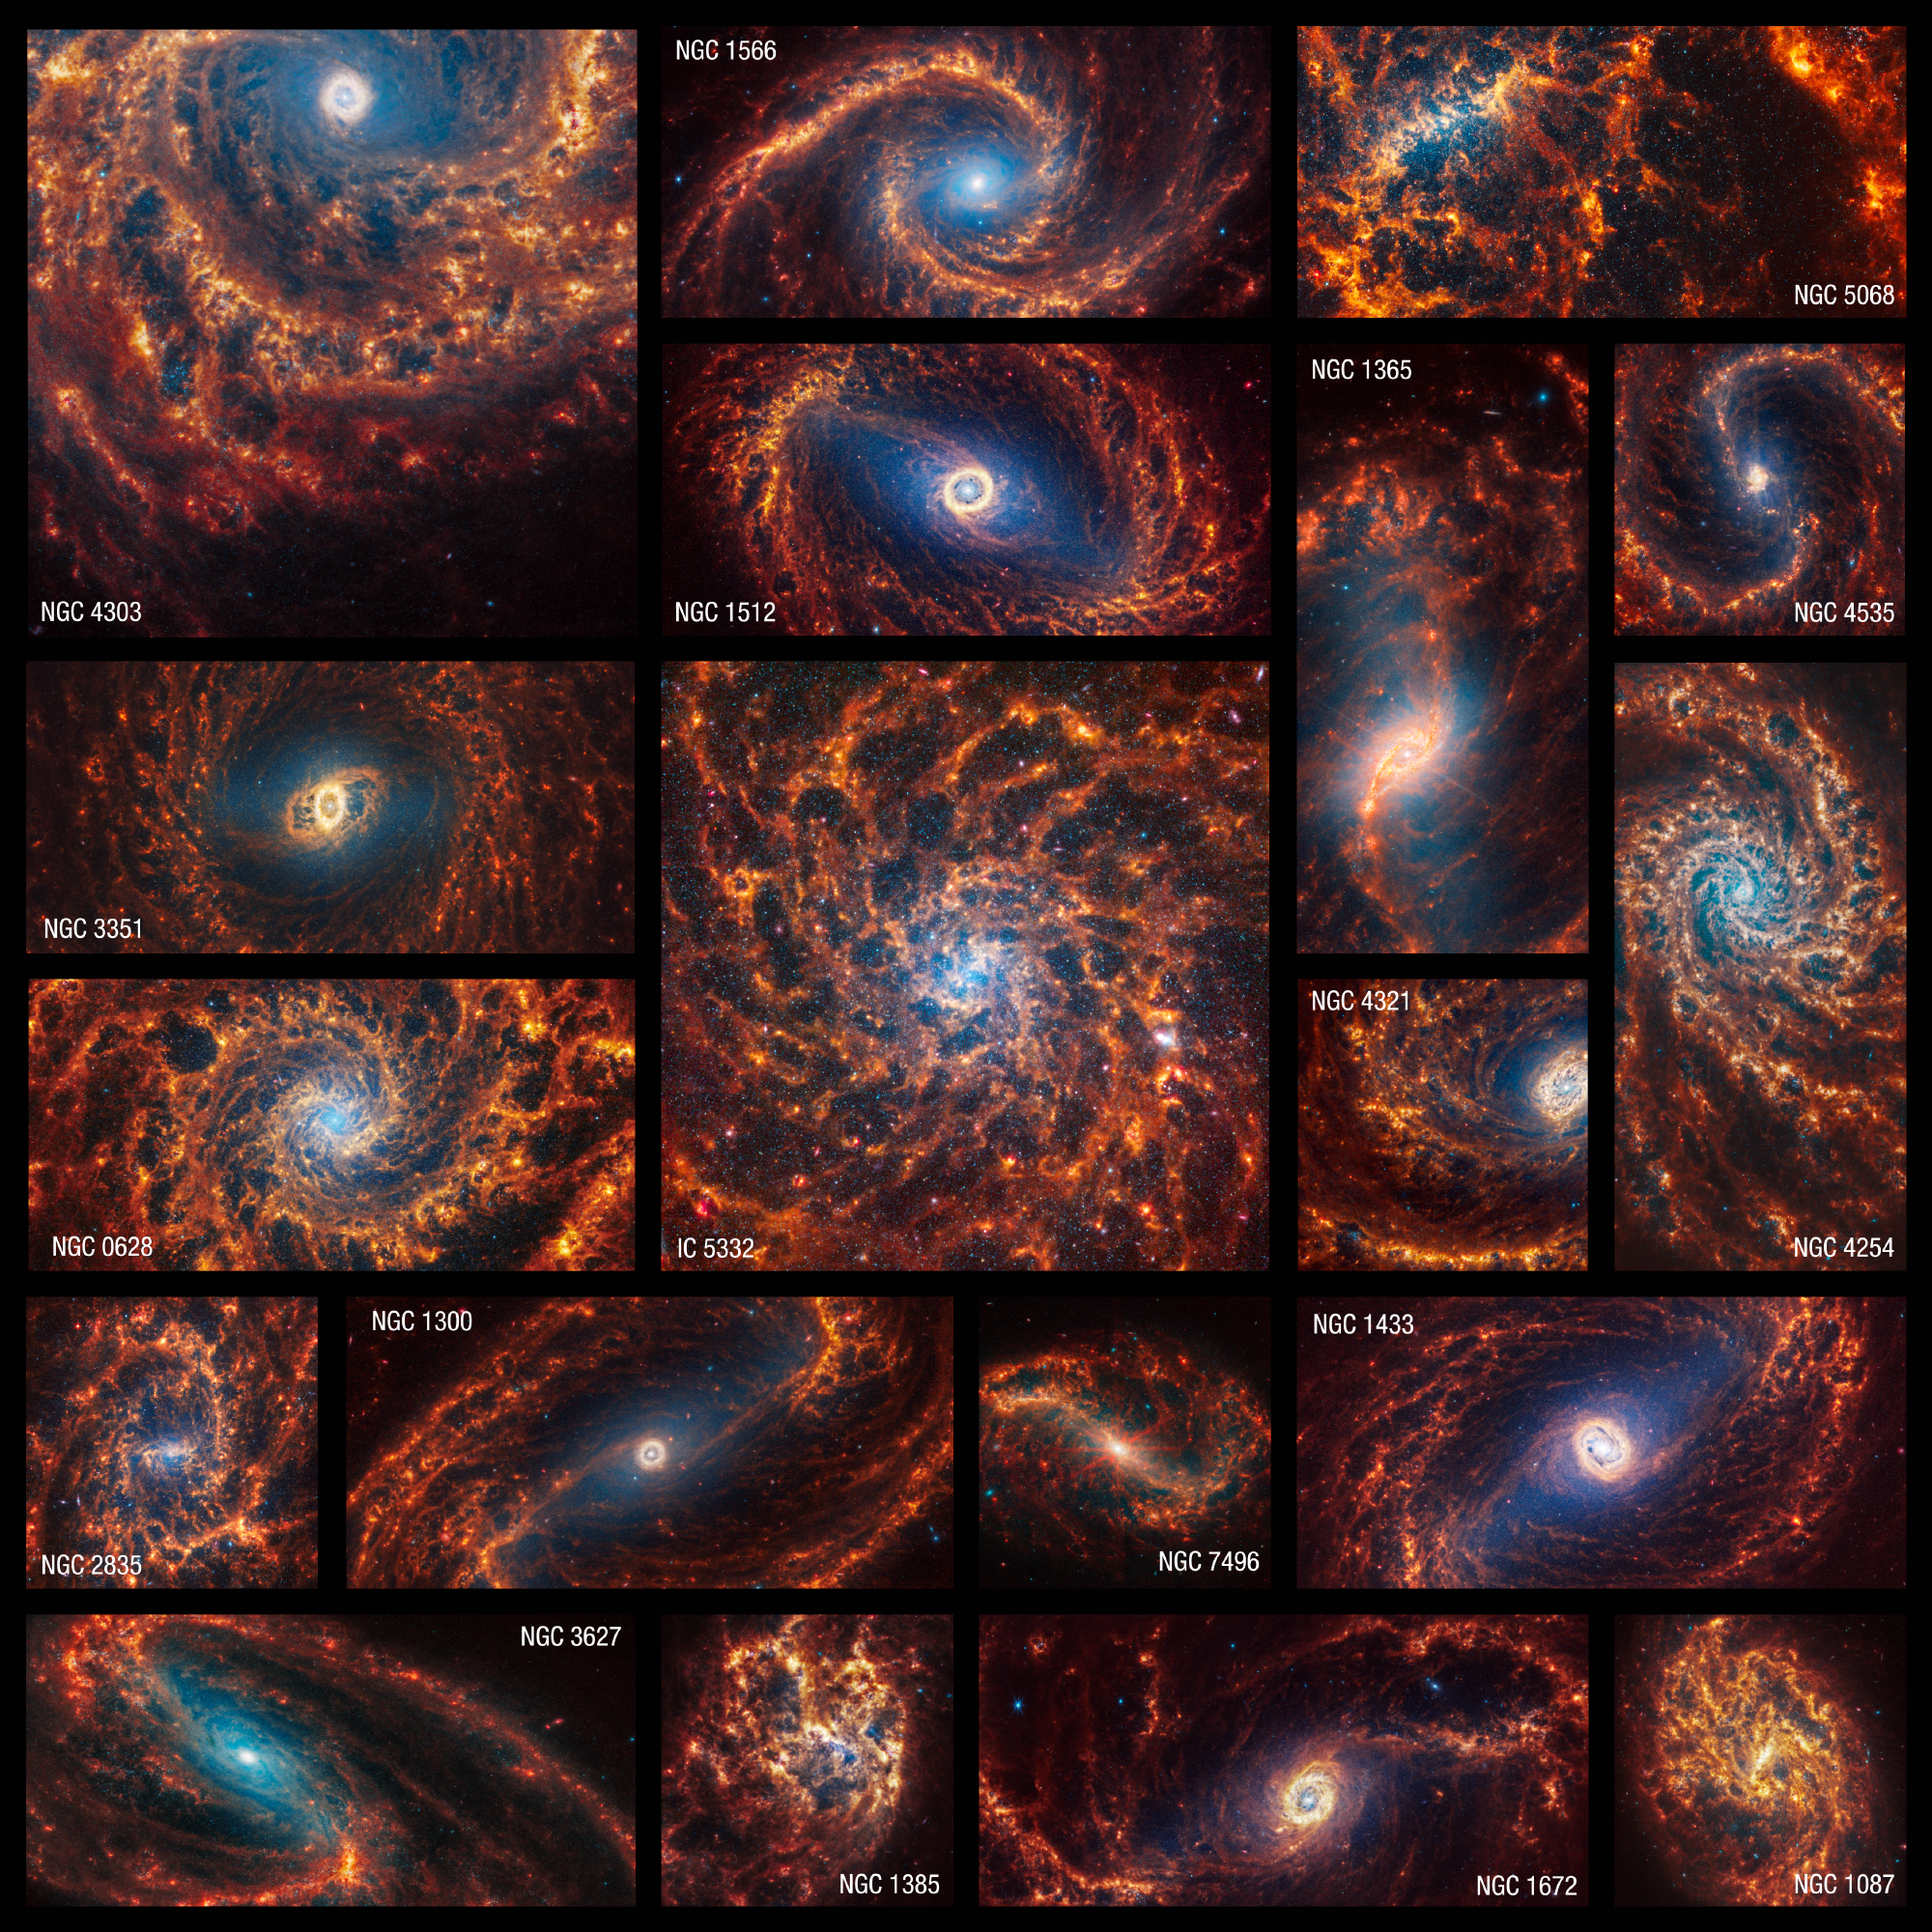 Imagens do James Webb mostram todas as facetas dessas galáxias espirais